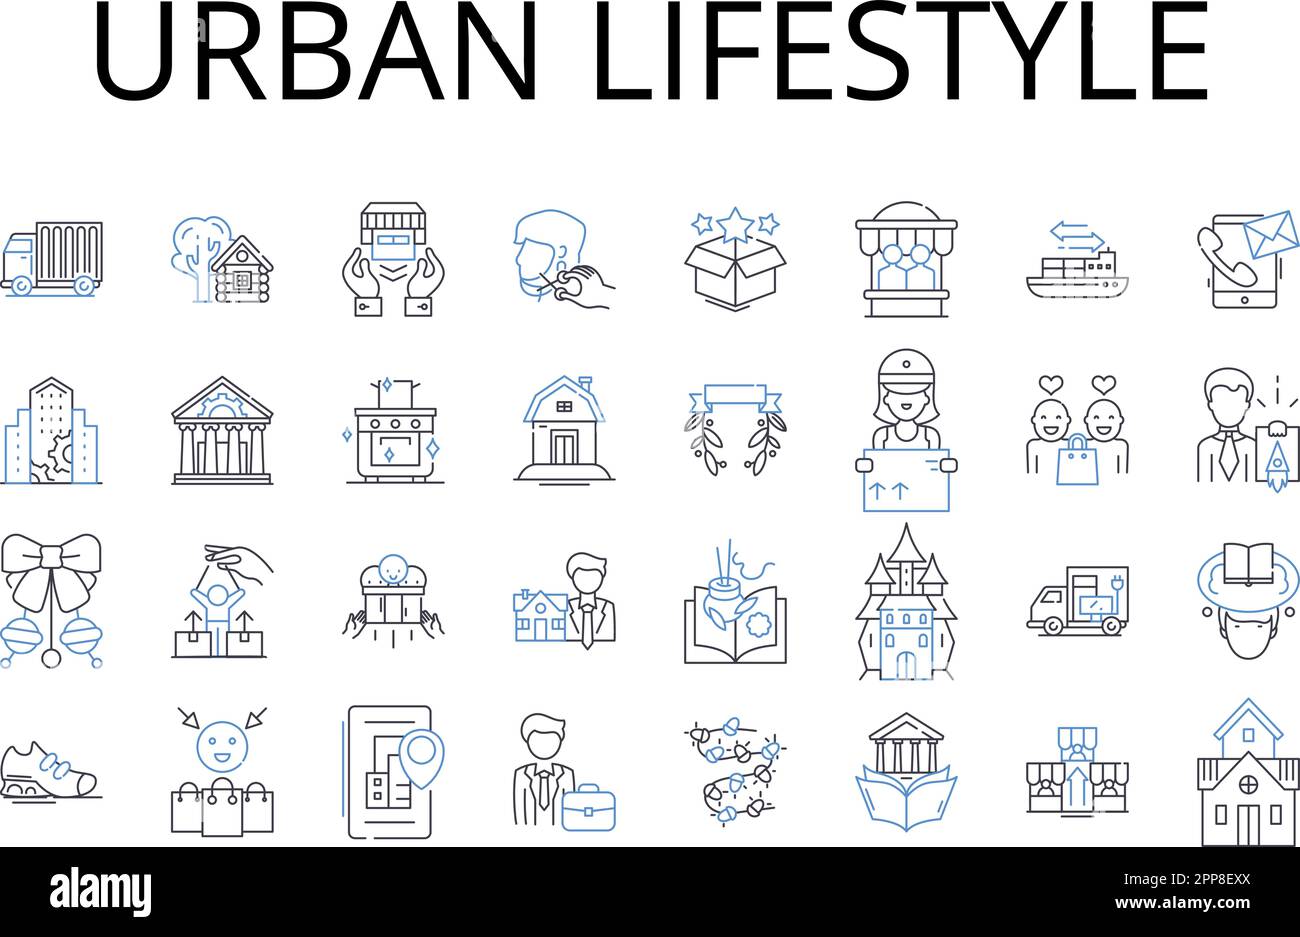 Urbane Lifestyle Line Icons Kollektion. Ländliches Leben, kosmopolitische Atmosphäre, Metropolitankultur, schnelles Leben, moderne Existenz, Modern Stock Vektor